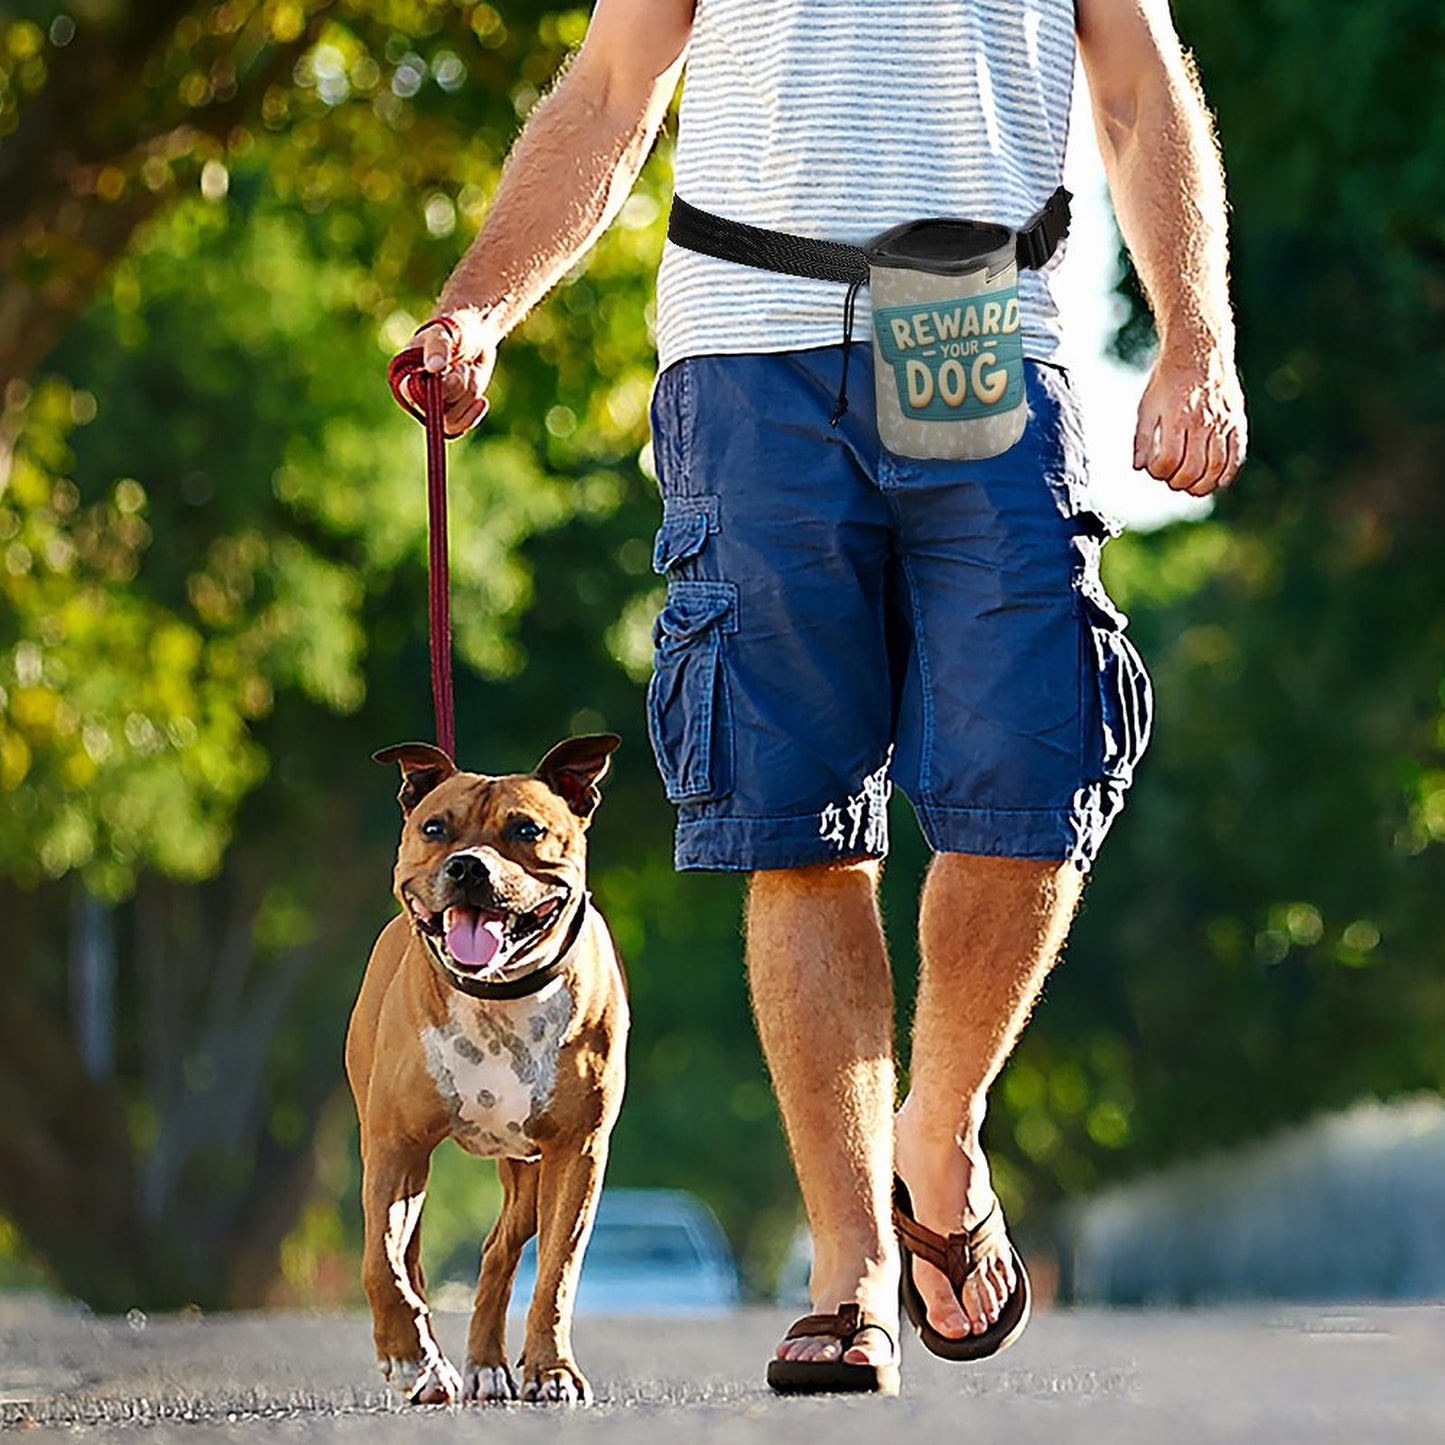 Dog Treat Training Bag - Reward  Your Dog Cute Sign